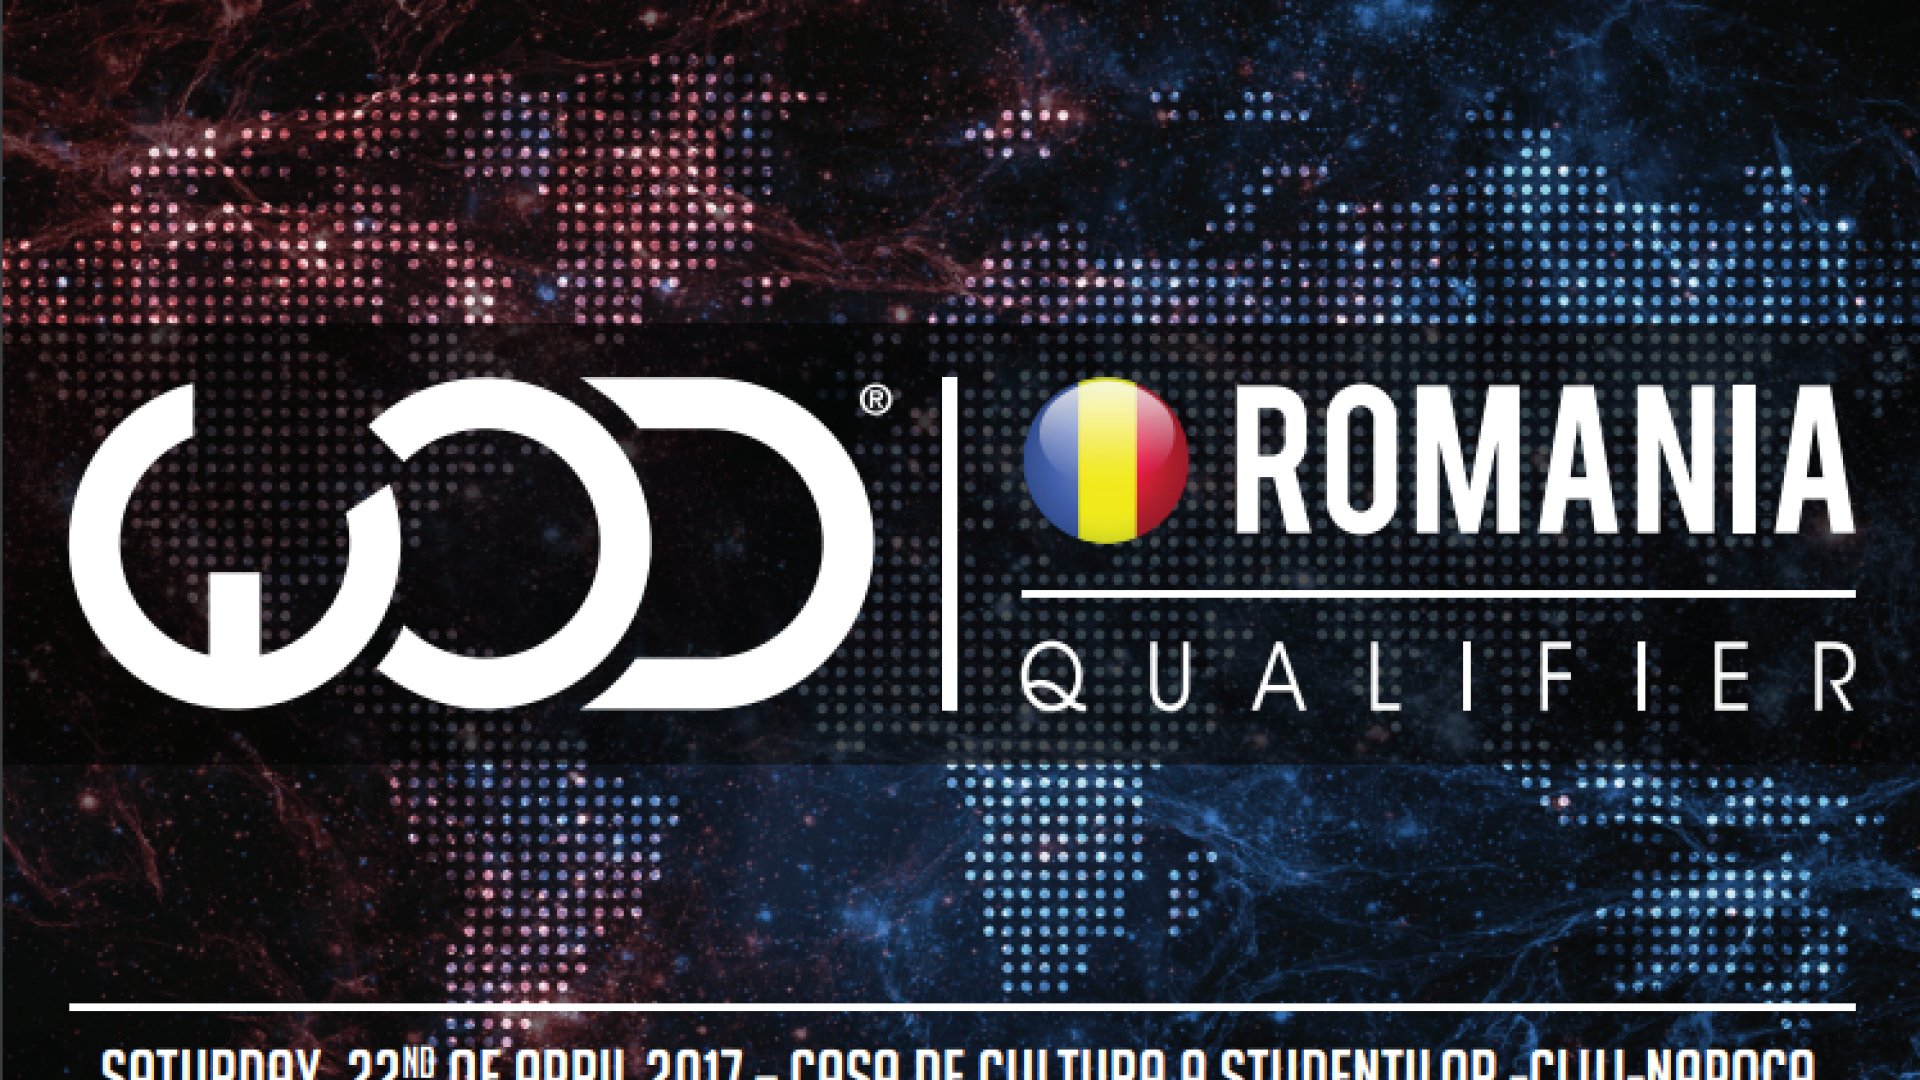 Competitia World of Dance Romania Qualifier reorganizata in Cluj-Napoca